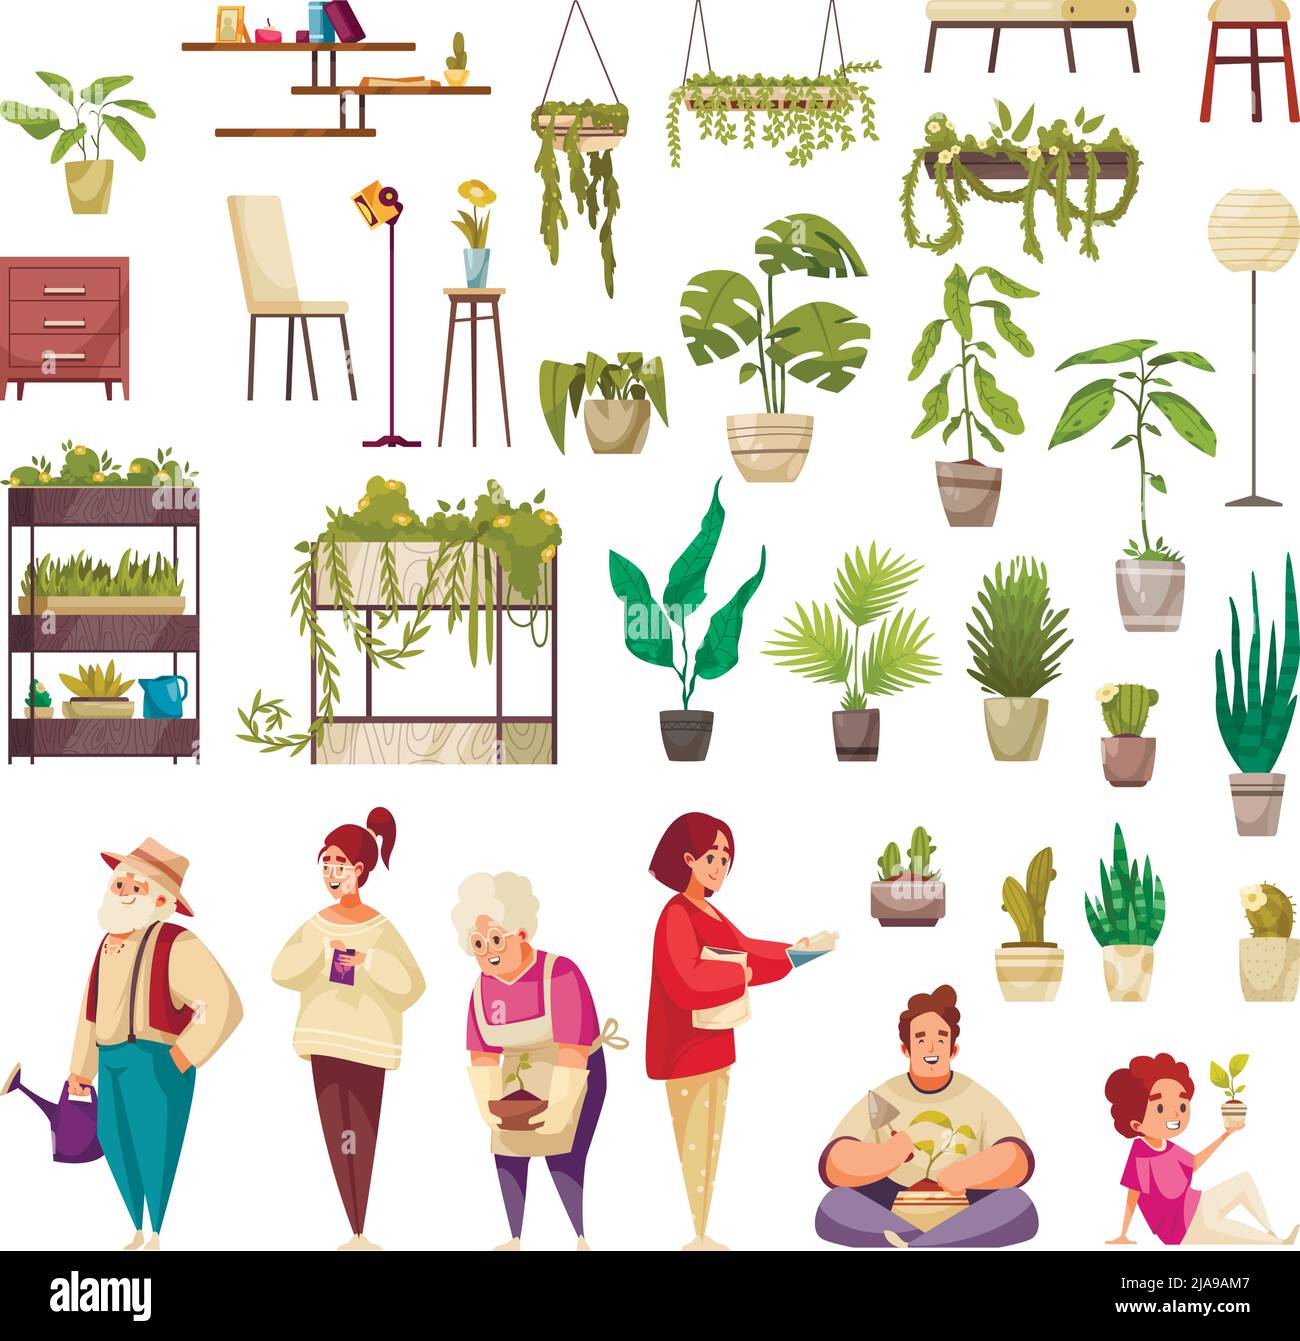 Ensemble de plantes de maison poussant dans des pots ou des jardinières meubles et les gens s'occupant de plantes d'intérieur illustration vectorielle isolée Illustration de Vecteur